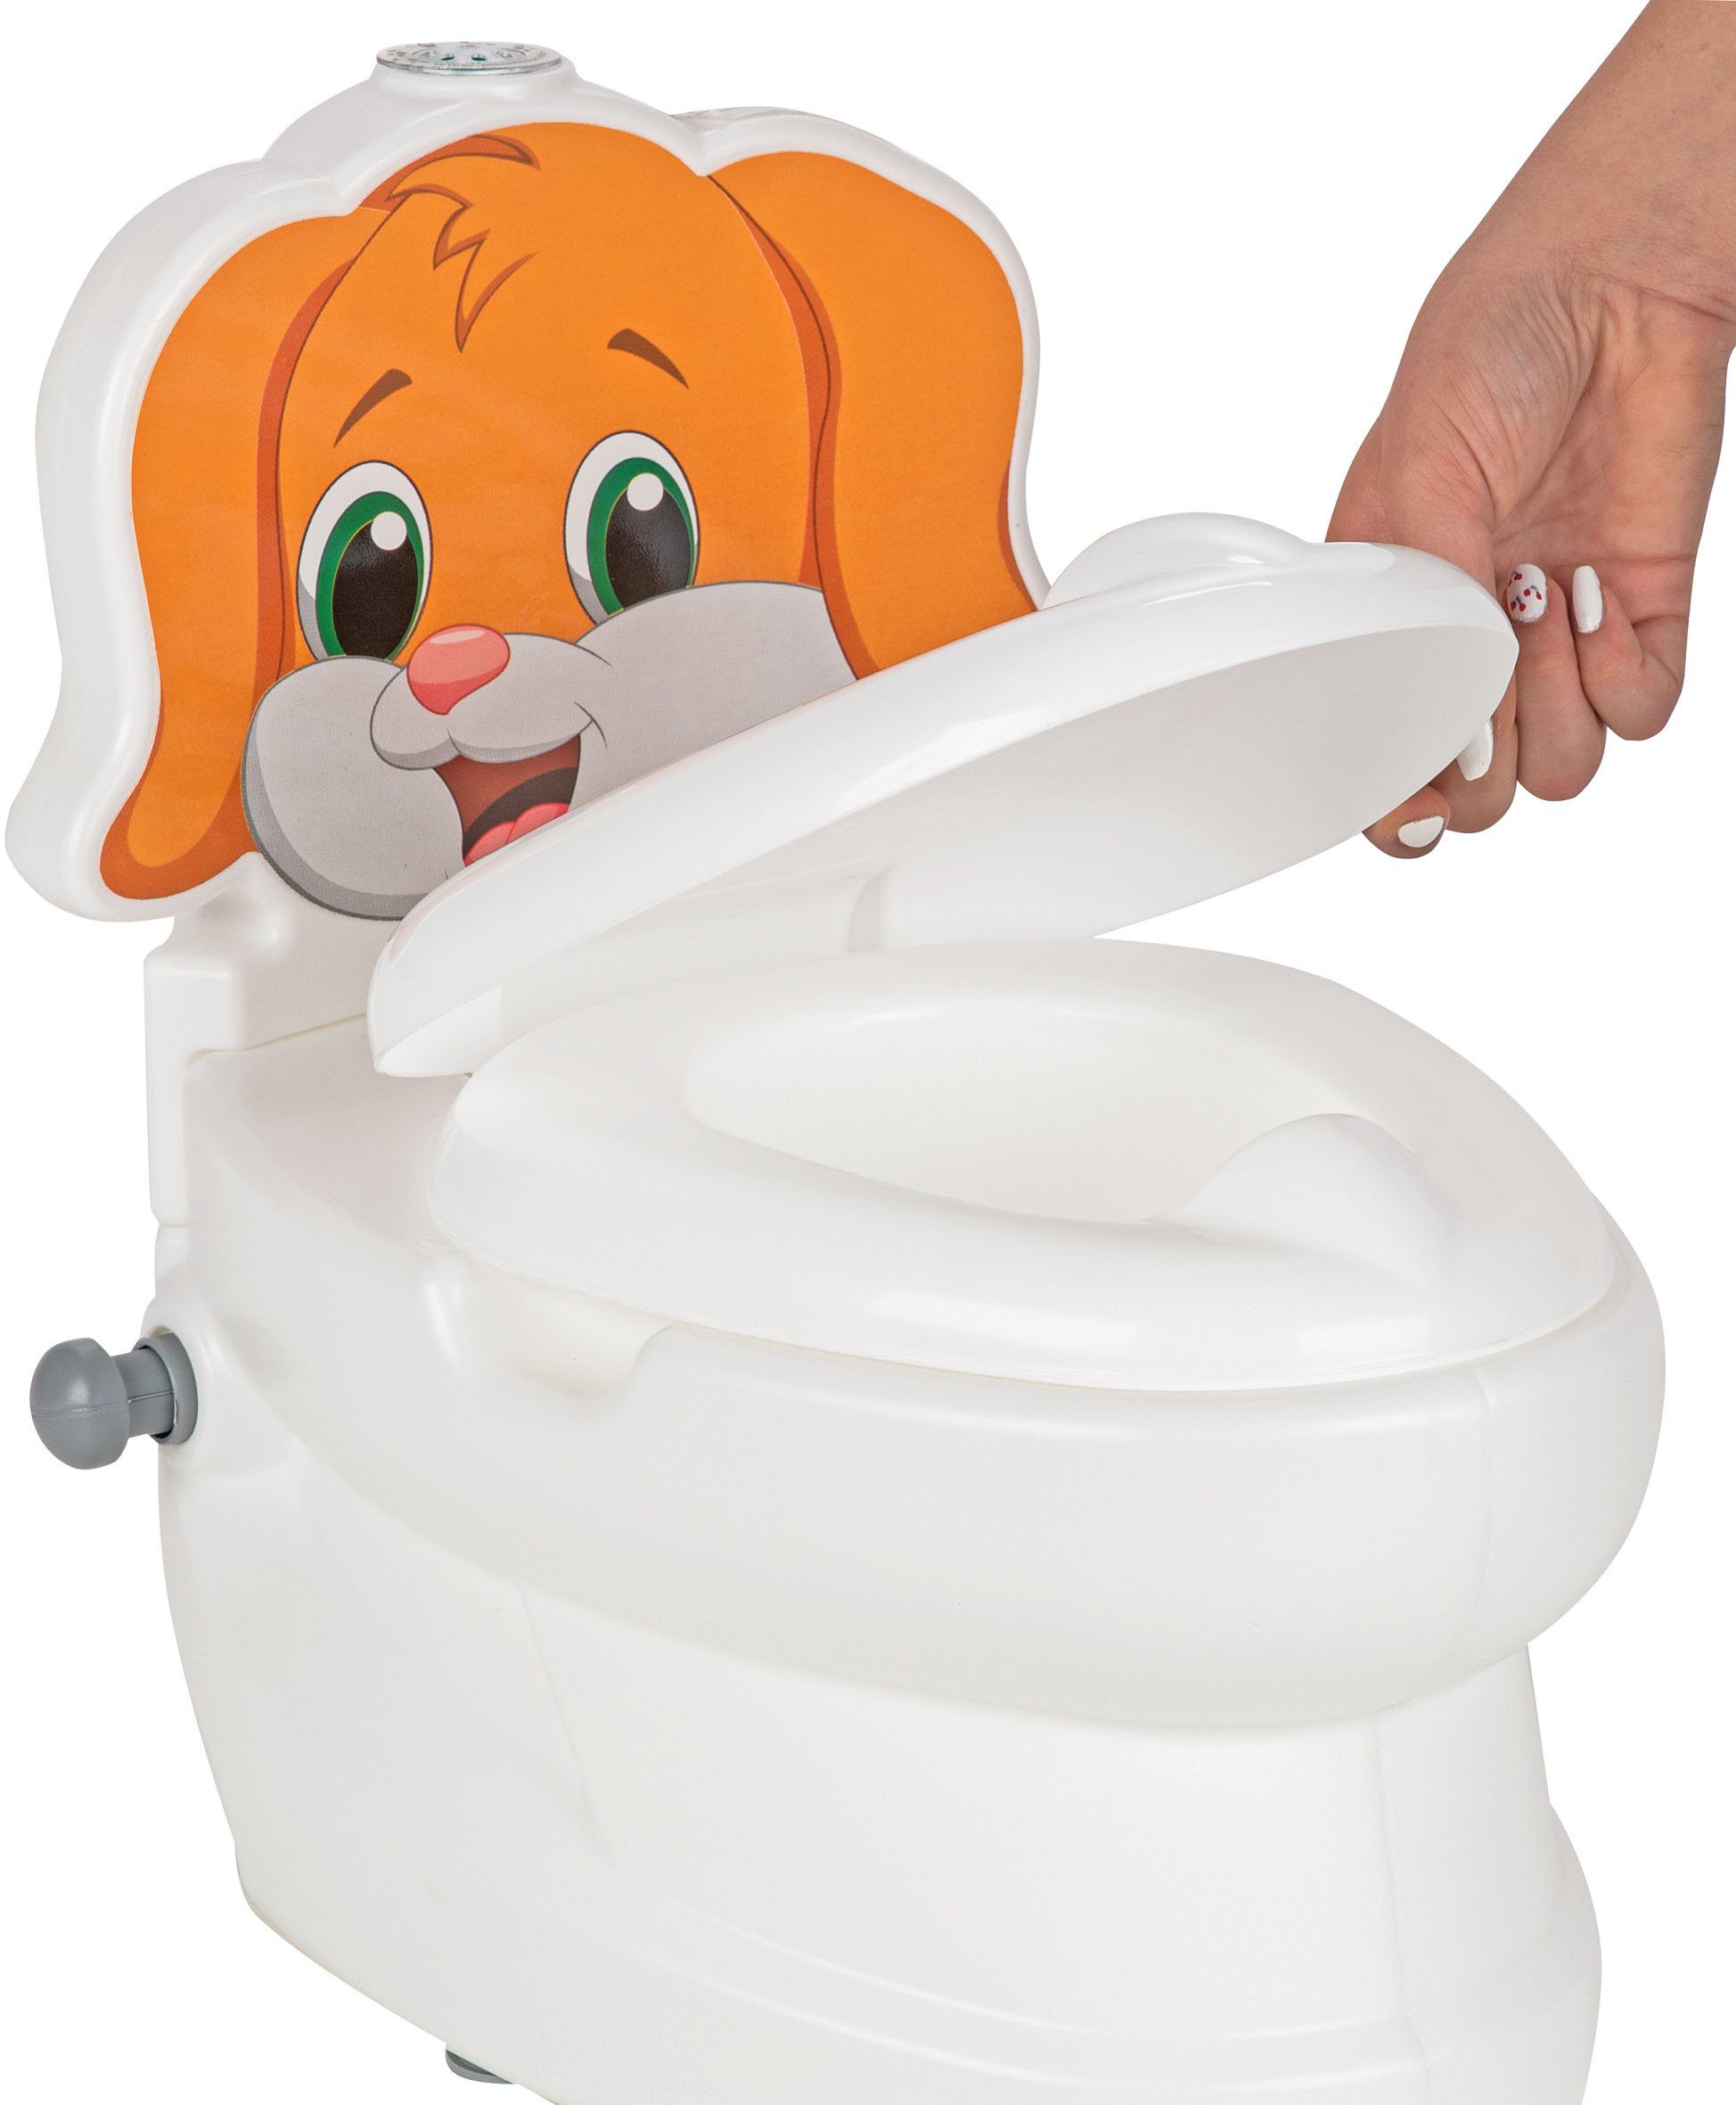 Jamara Toilettentrainer Meine kleine Toilette, mit Hund, Toilettenpapierhalter Spülsound und